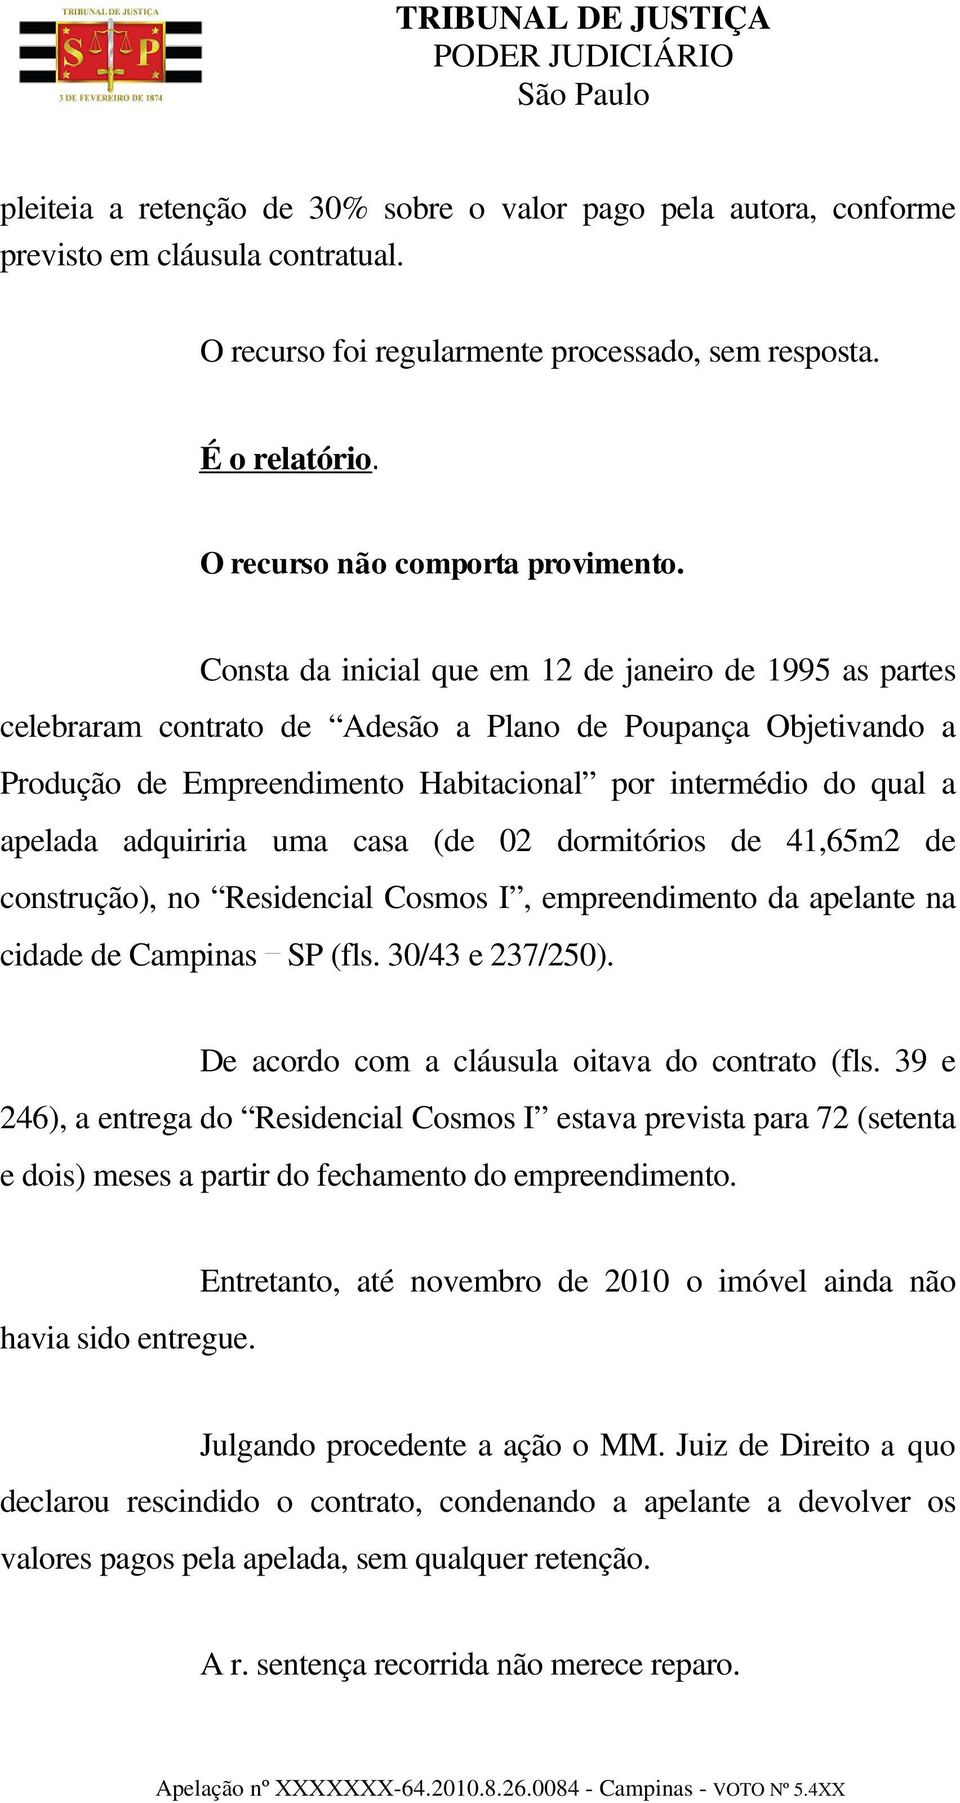 Consta da inicial que em 12 de janeiro de 1995 as partes celebraram contrato de Adesão a Plano de Poupança Objetivando a Produção de Empreendimento Habitacional por intermédio do qual a apelada